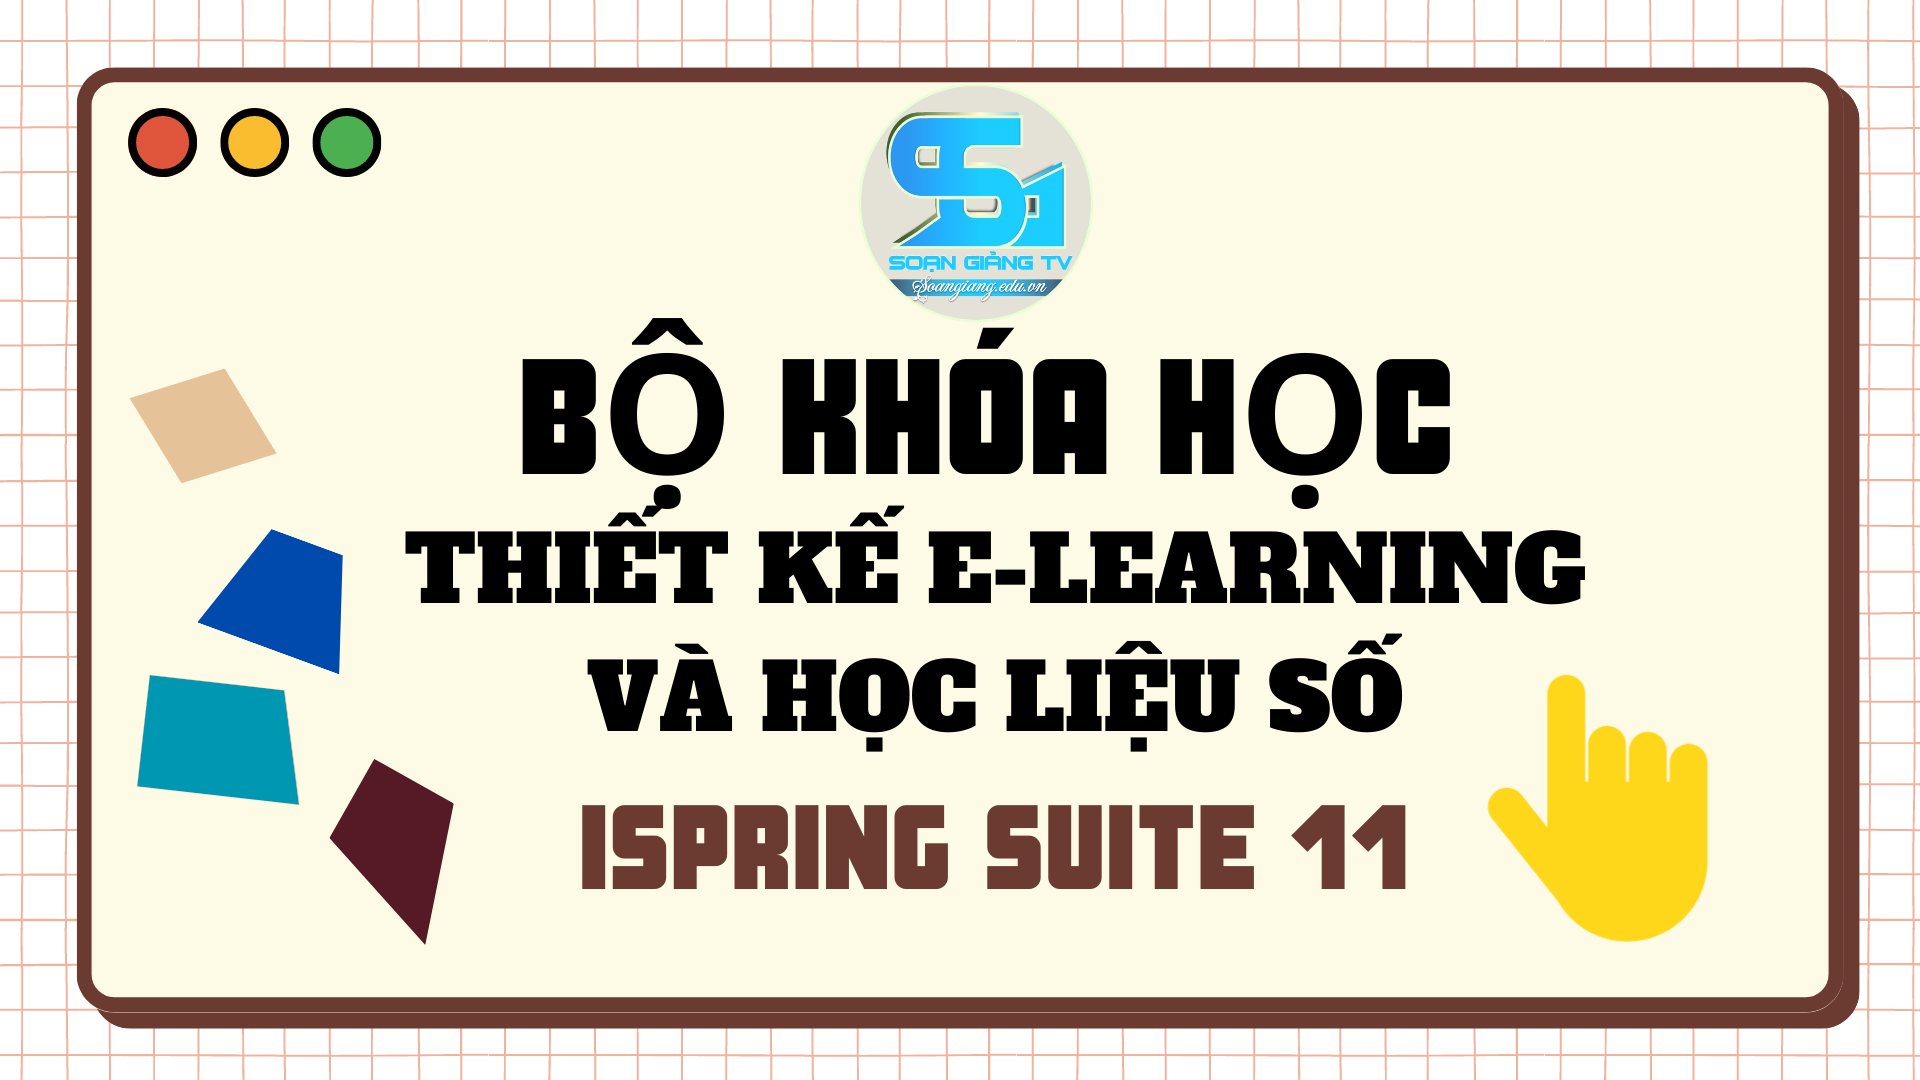 Khóa học thiết kế bài giảng elearning/học liệu số Ispring suite 11